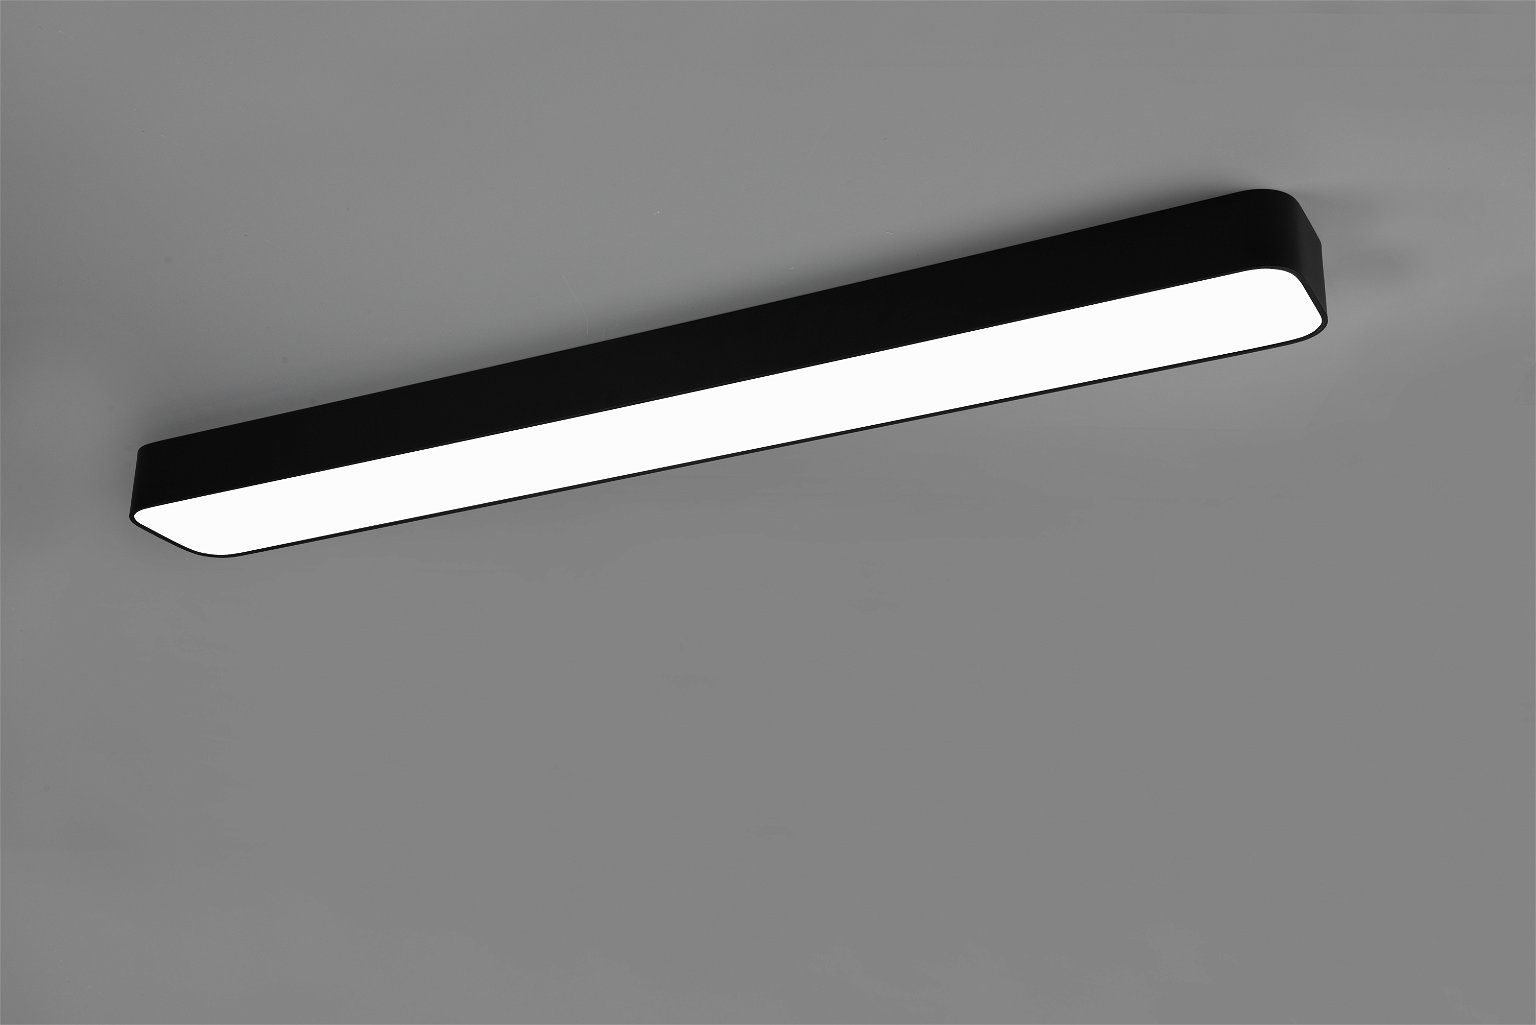 Lubinis LED šviestuvas REALITY ASTERION, 37W, max 3800lm, 2700-6500K, 118x14xh7cm, valdomas pulteliu